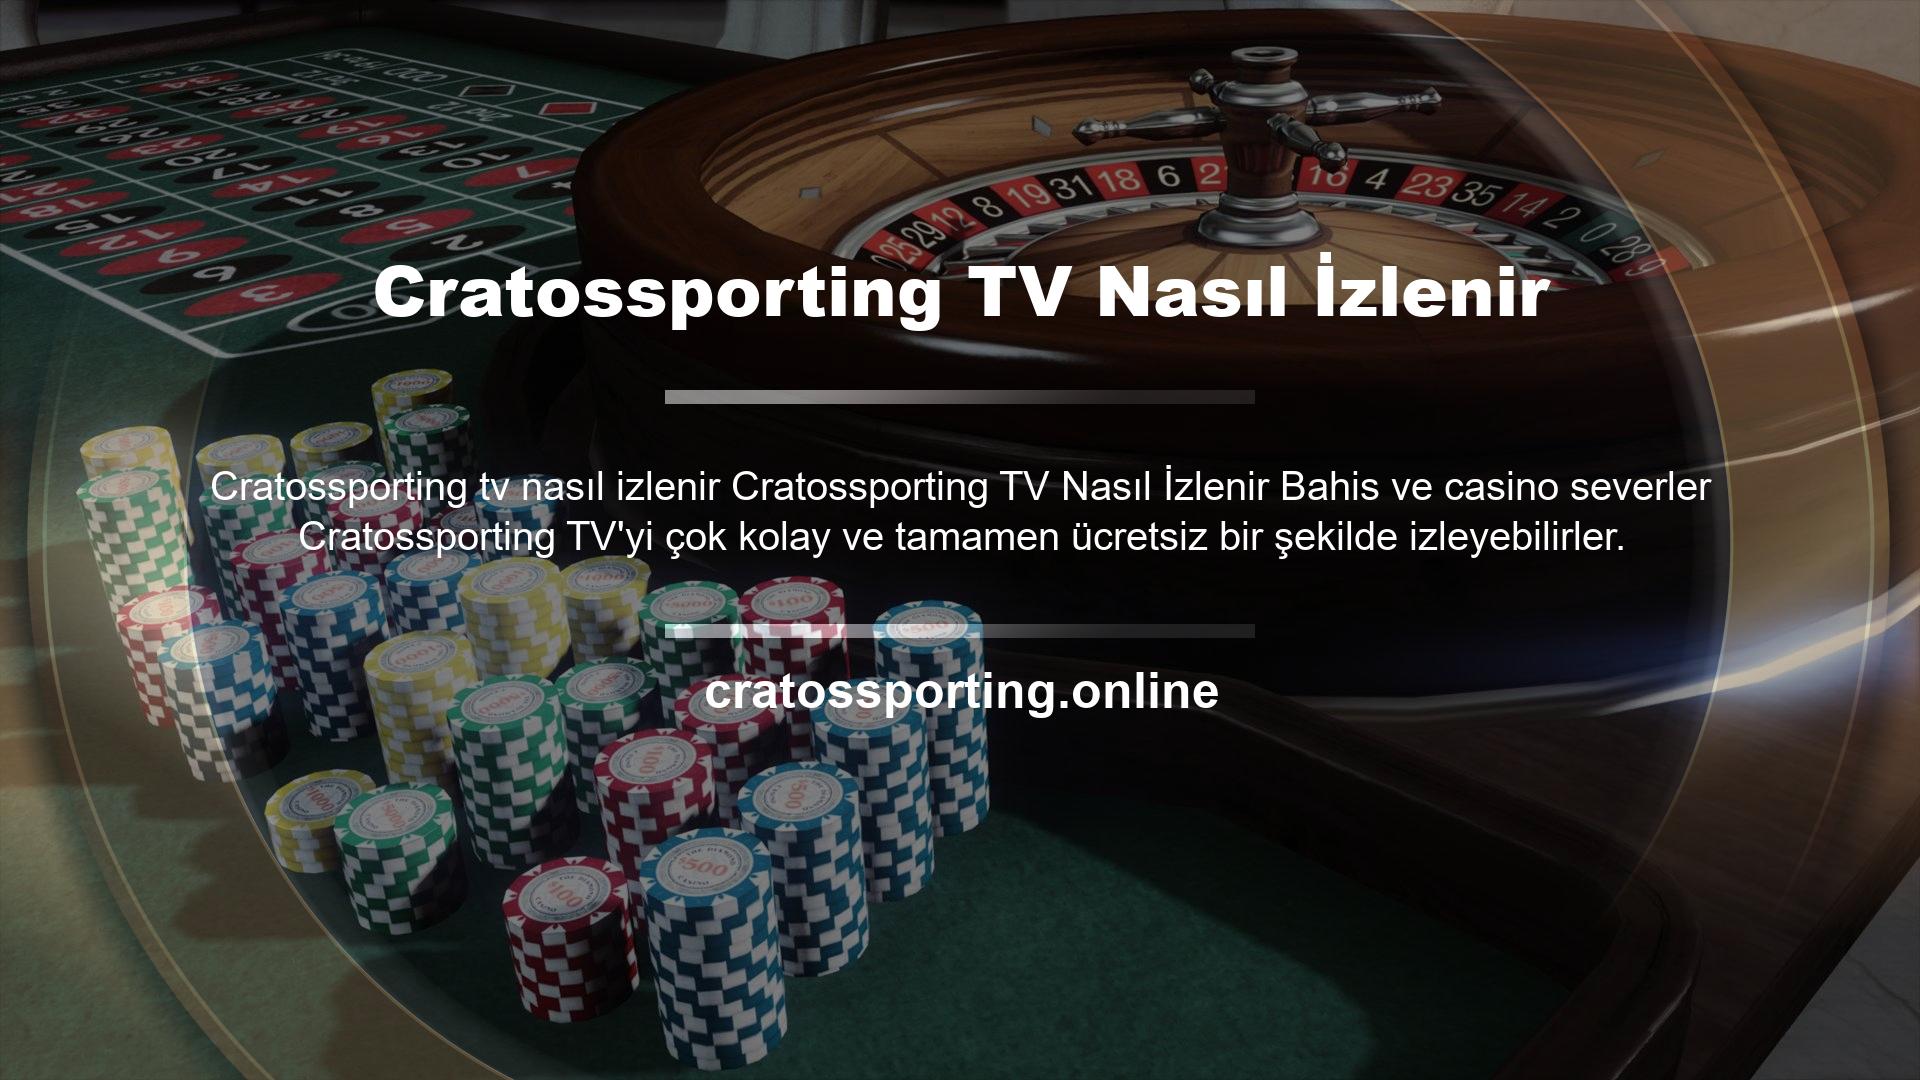 Üyeler giriş yaptıktan sonra ana sayfadaki "Cratossporting tv" seçeneğine tıklayarak canlı yayının olduğu alternatif sayfaya giriş yapabilirler